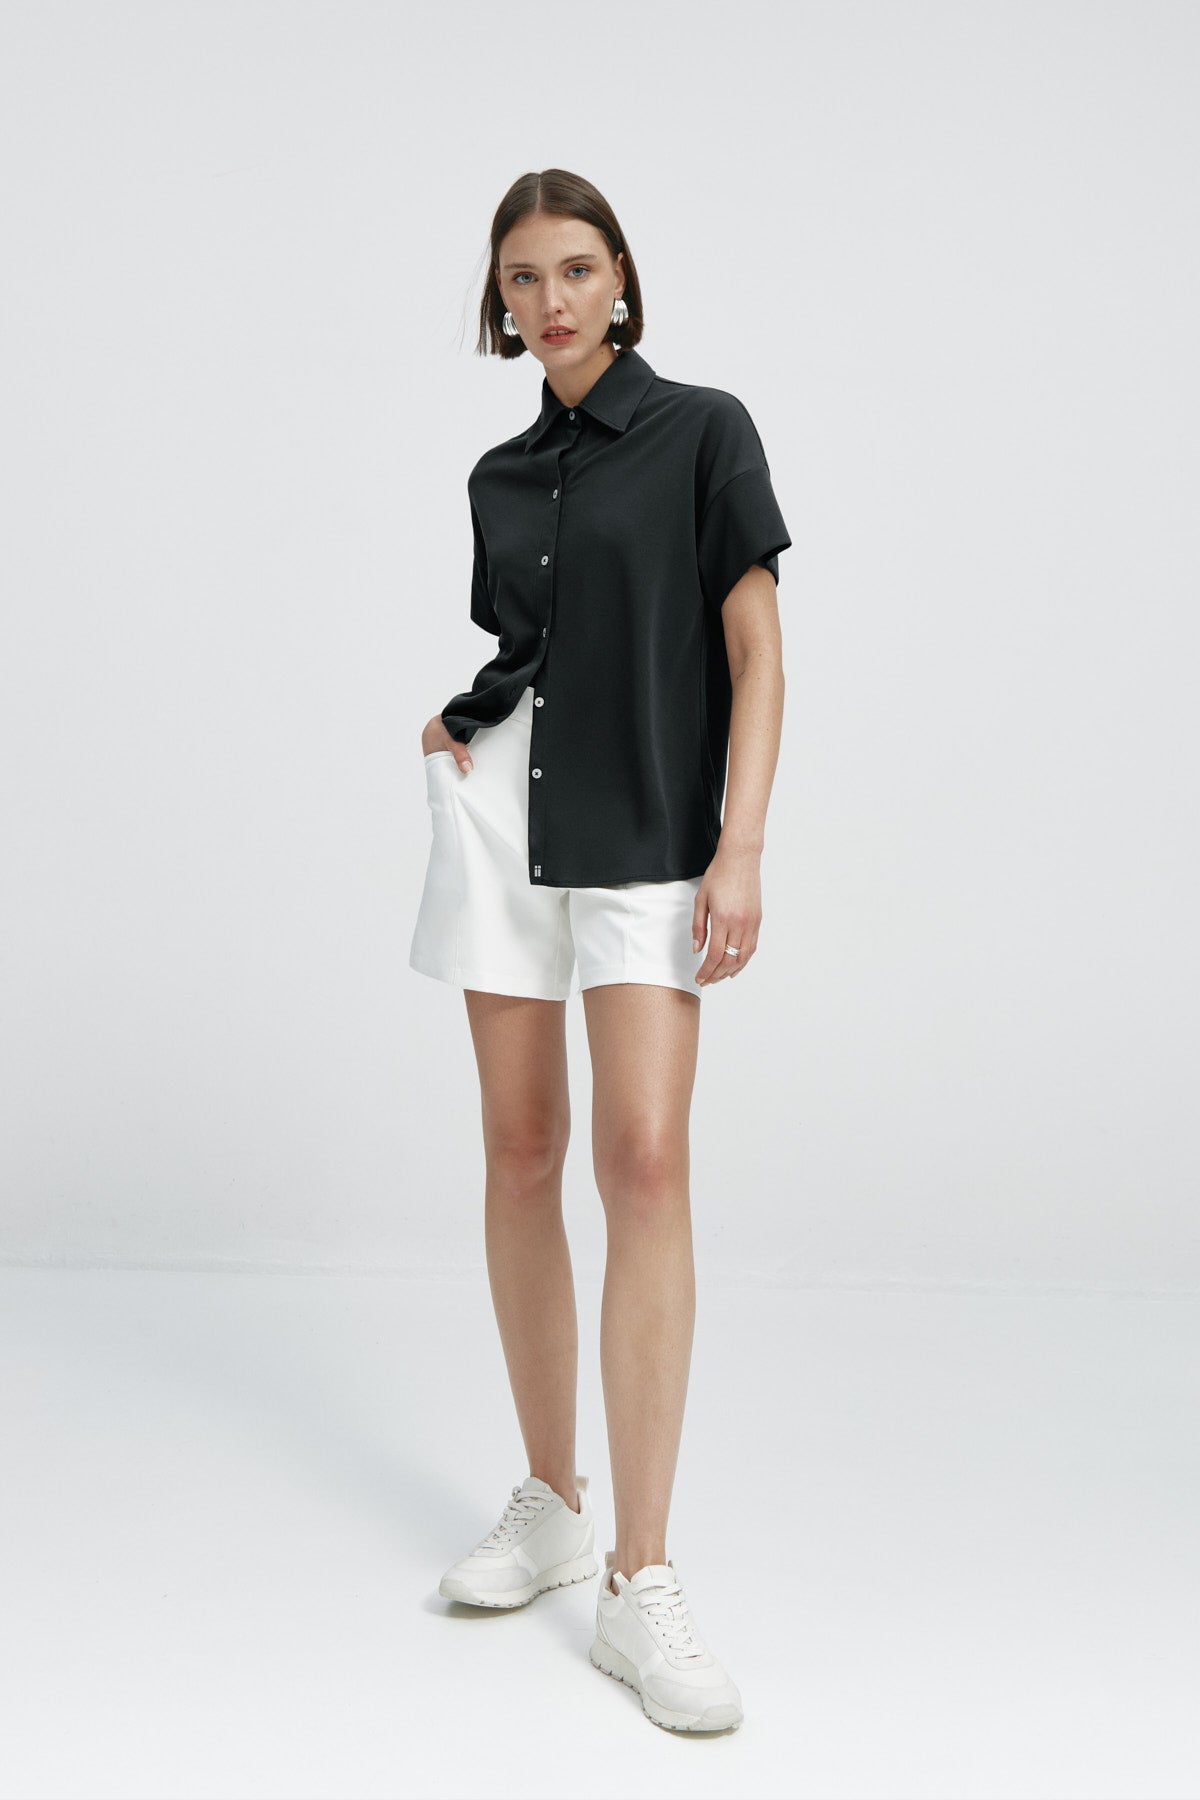 Camisa manga corta mujer negra de Sepiia, estilo y versatilidad en una prenda cómoda y resistente. Foto cuerpo entero